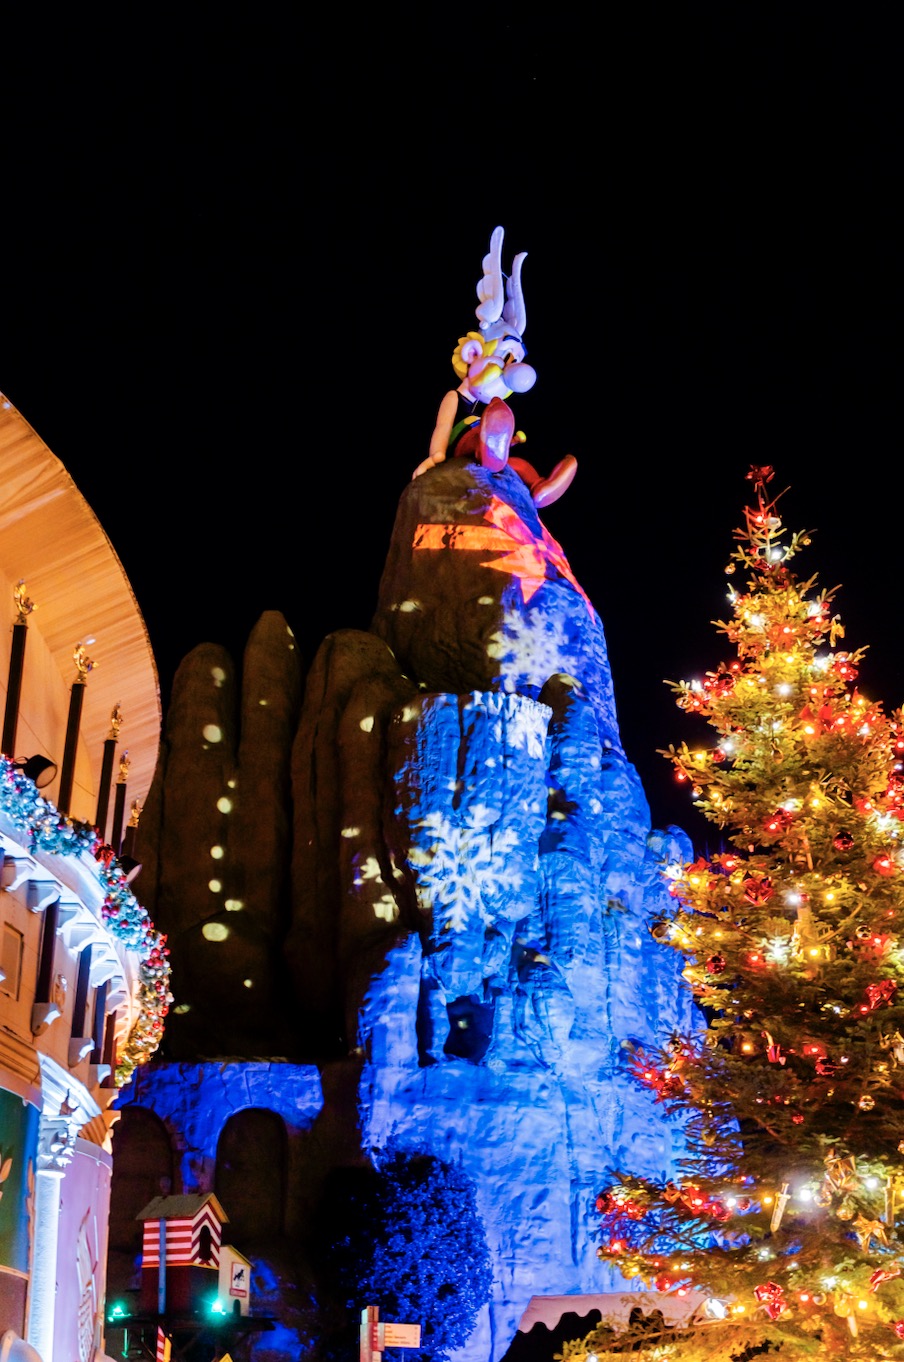 Noël à Rennes: Les photos des illuminations - Diaporama rennes